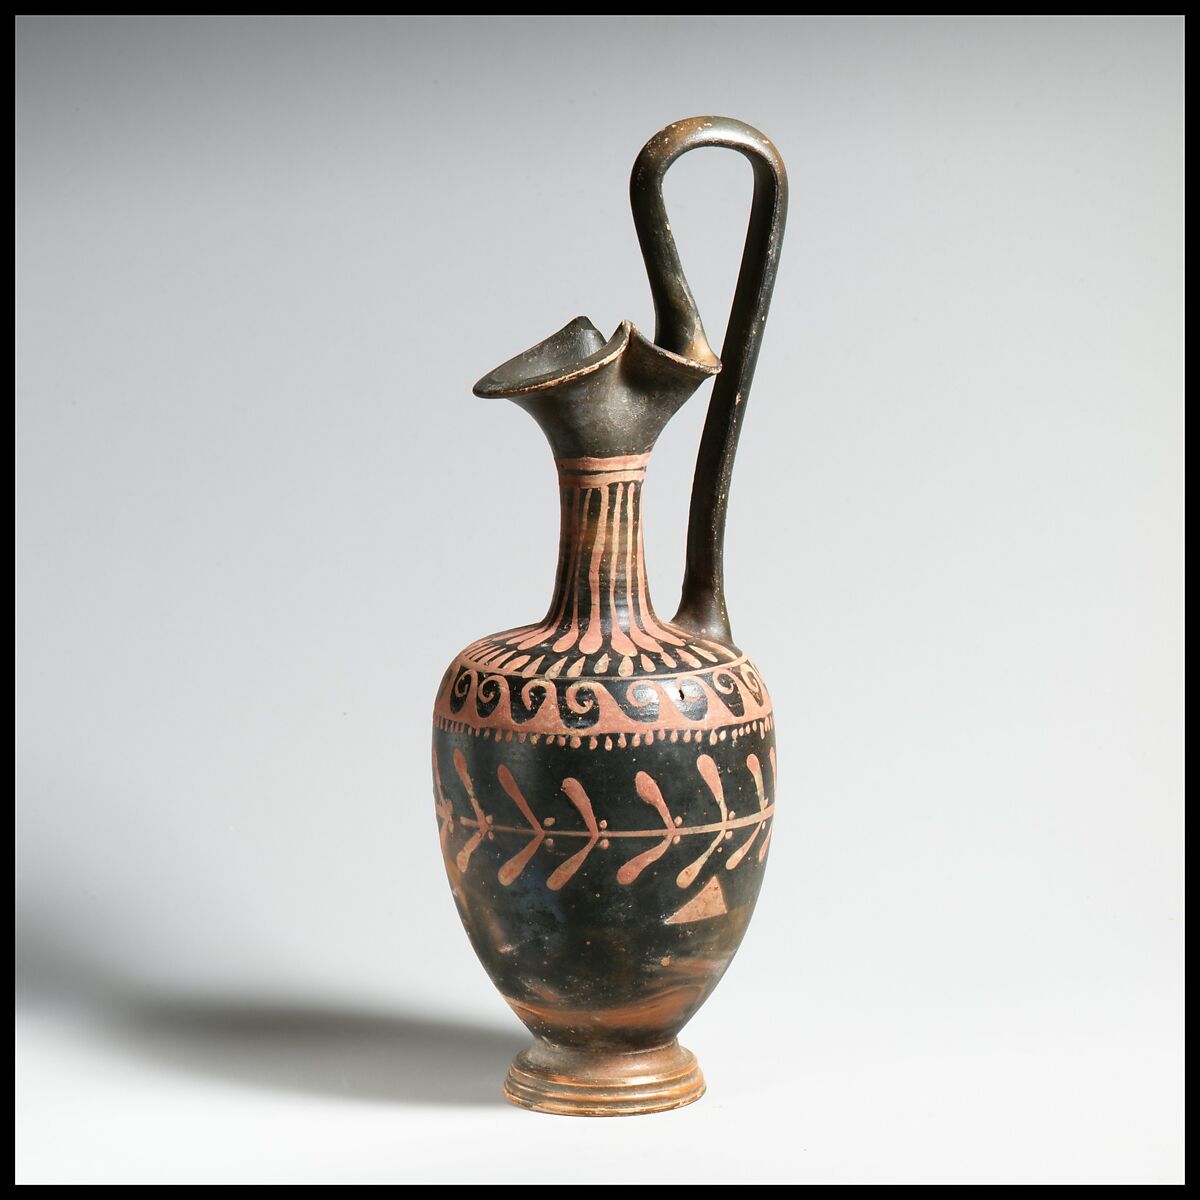 Terracotta oinochoe (jug), Terracotta, Greek, South Italian 